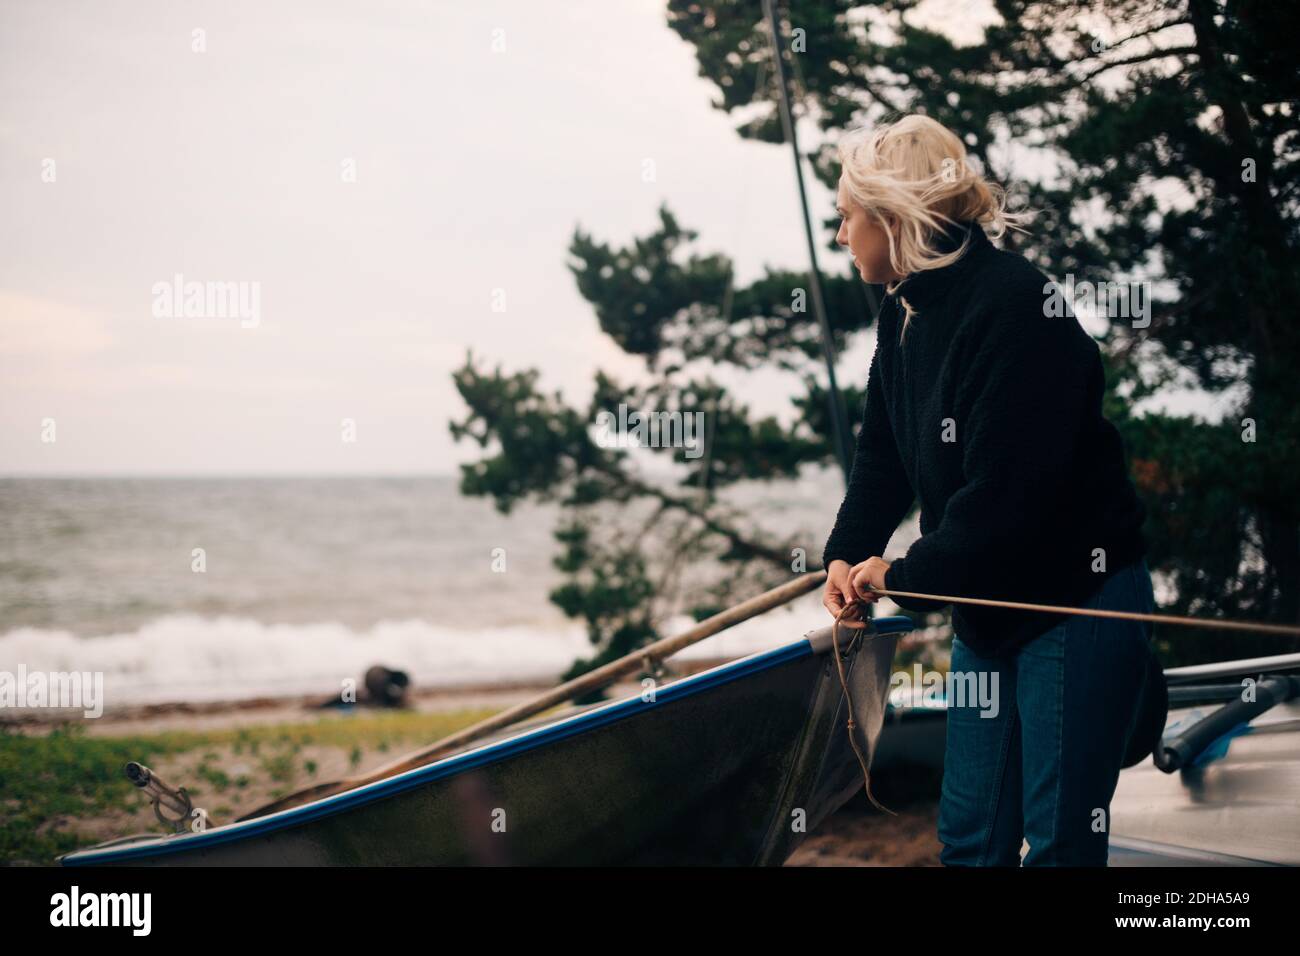 Junge Frau, die am Strand ein Boot bindet Stockfoto